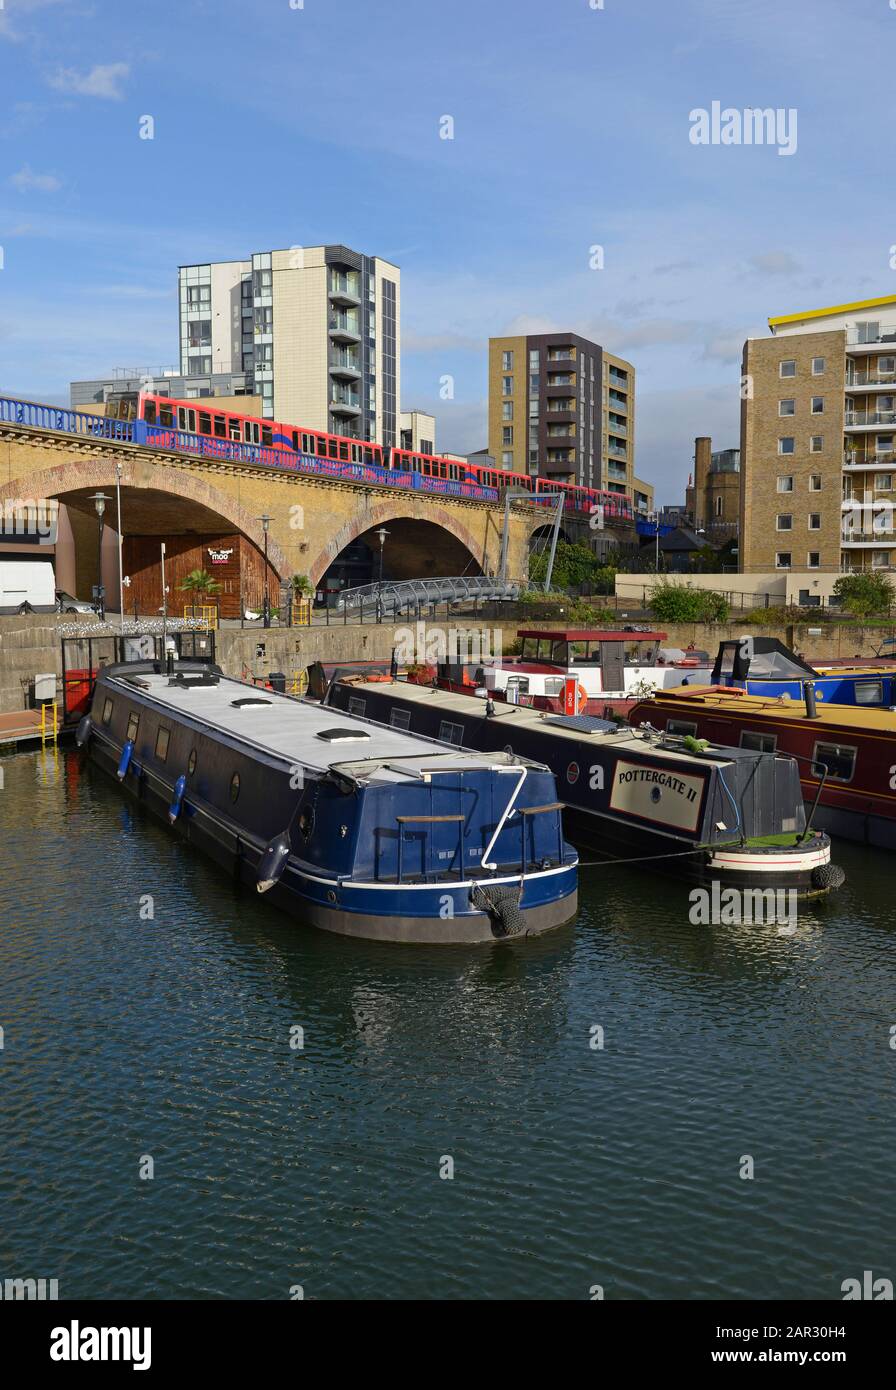 Un service de Docklands Light Railway passe par un viaduc à côté des bateaux résidentiels amarrés dans la marina de Limehouse Basin, dans l'est de Londres, Londres, Royaume-Uni Banque D'Images